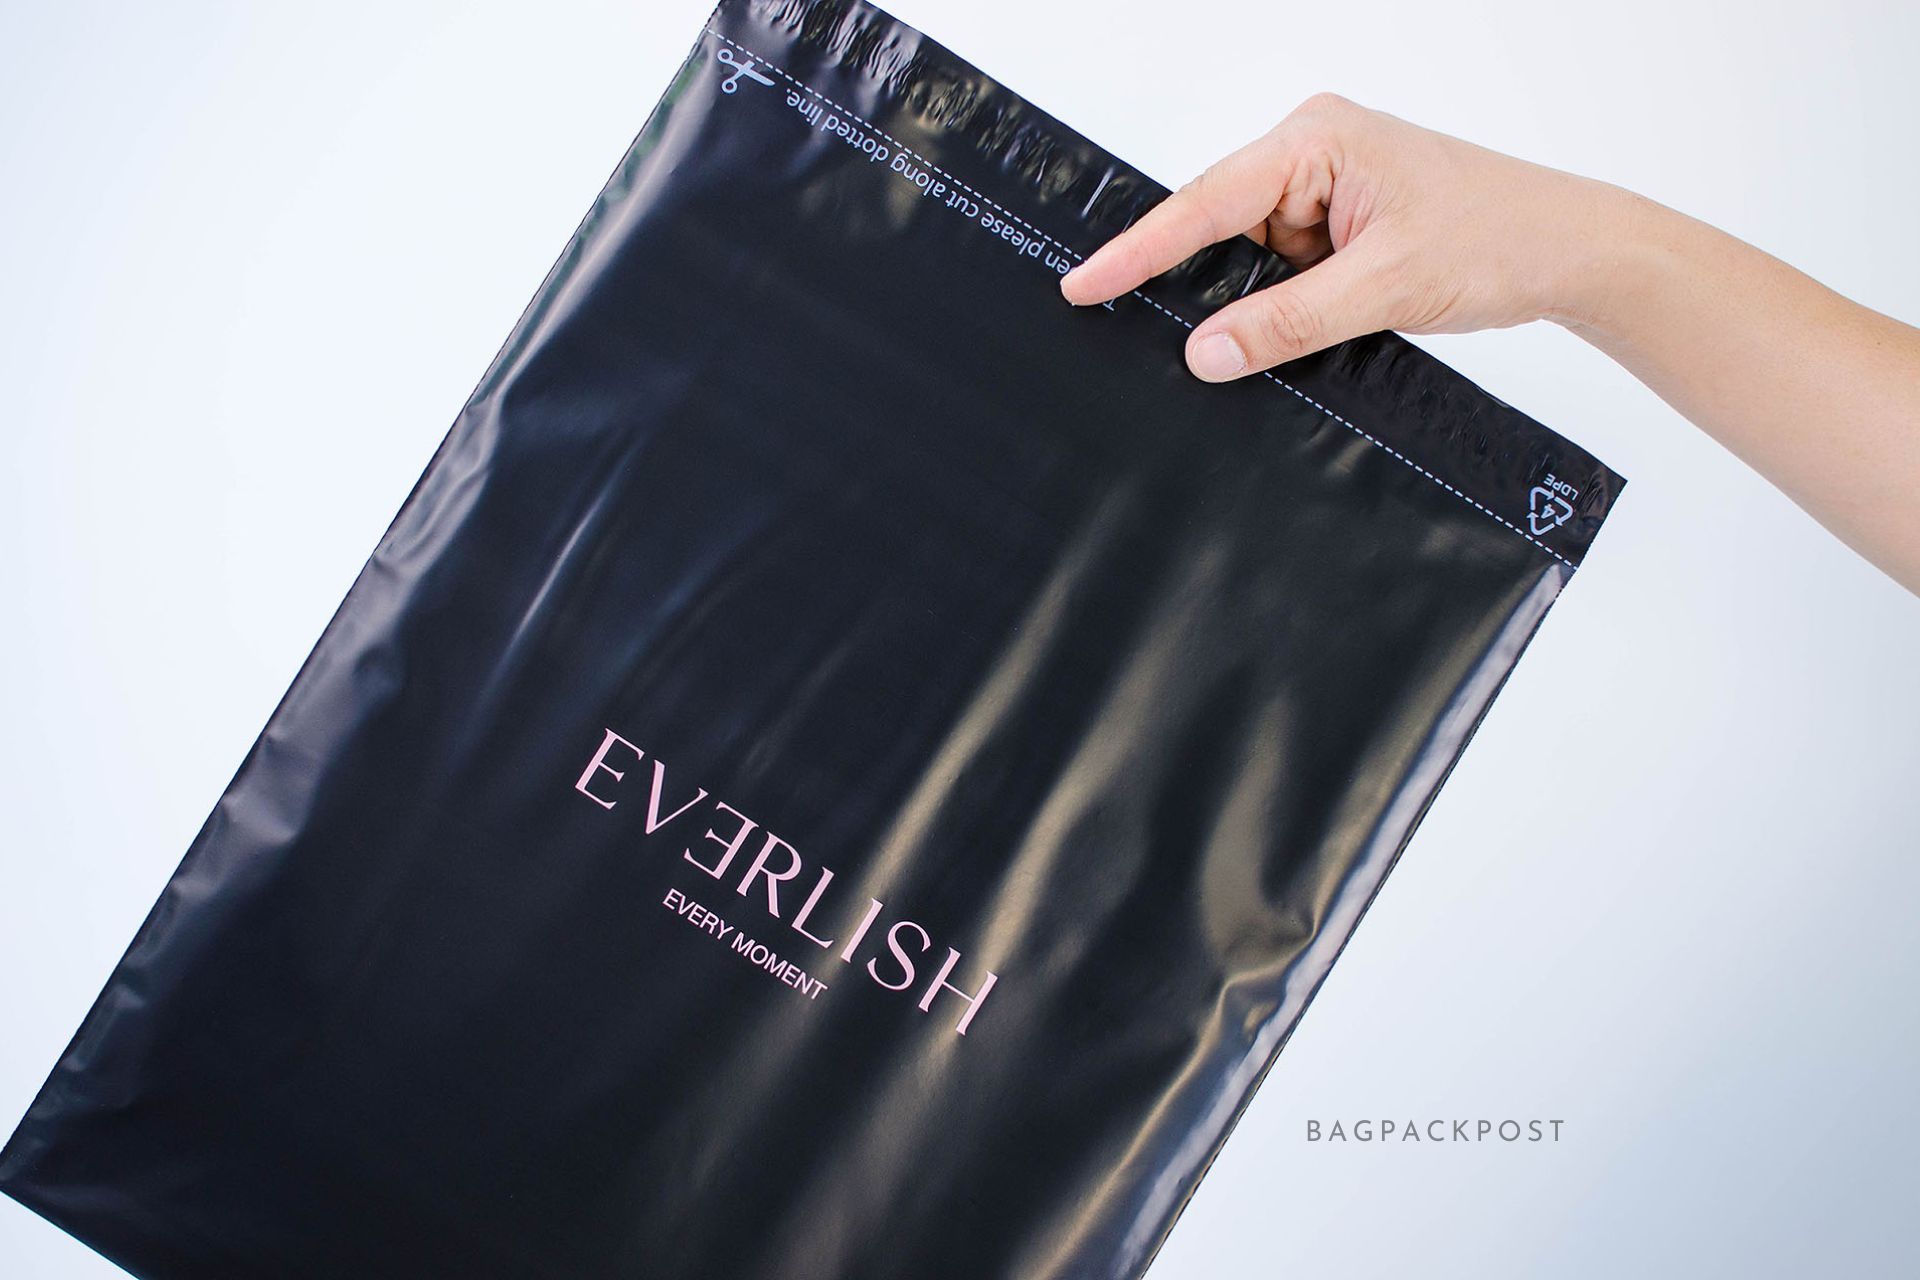 ผลิตถุงไปรษณีย์ ซองไปรษณีย์พิมพ์ลาย EVERLISH ซองไปรษณีย์สีดำ ถุงไปรษณีย์พิมพ์ลาย 4 BagPackPost